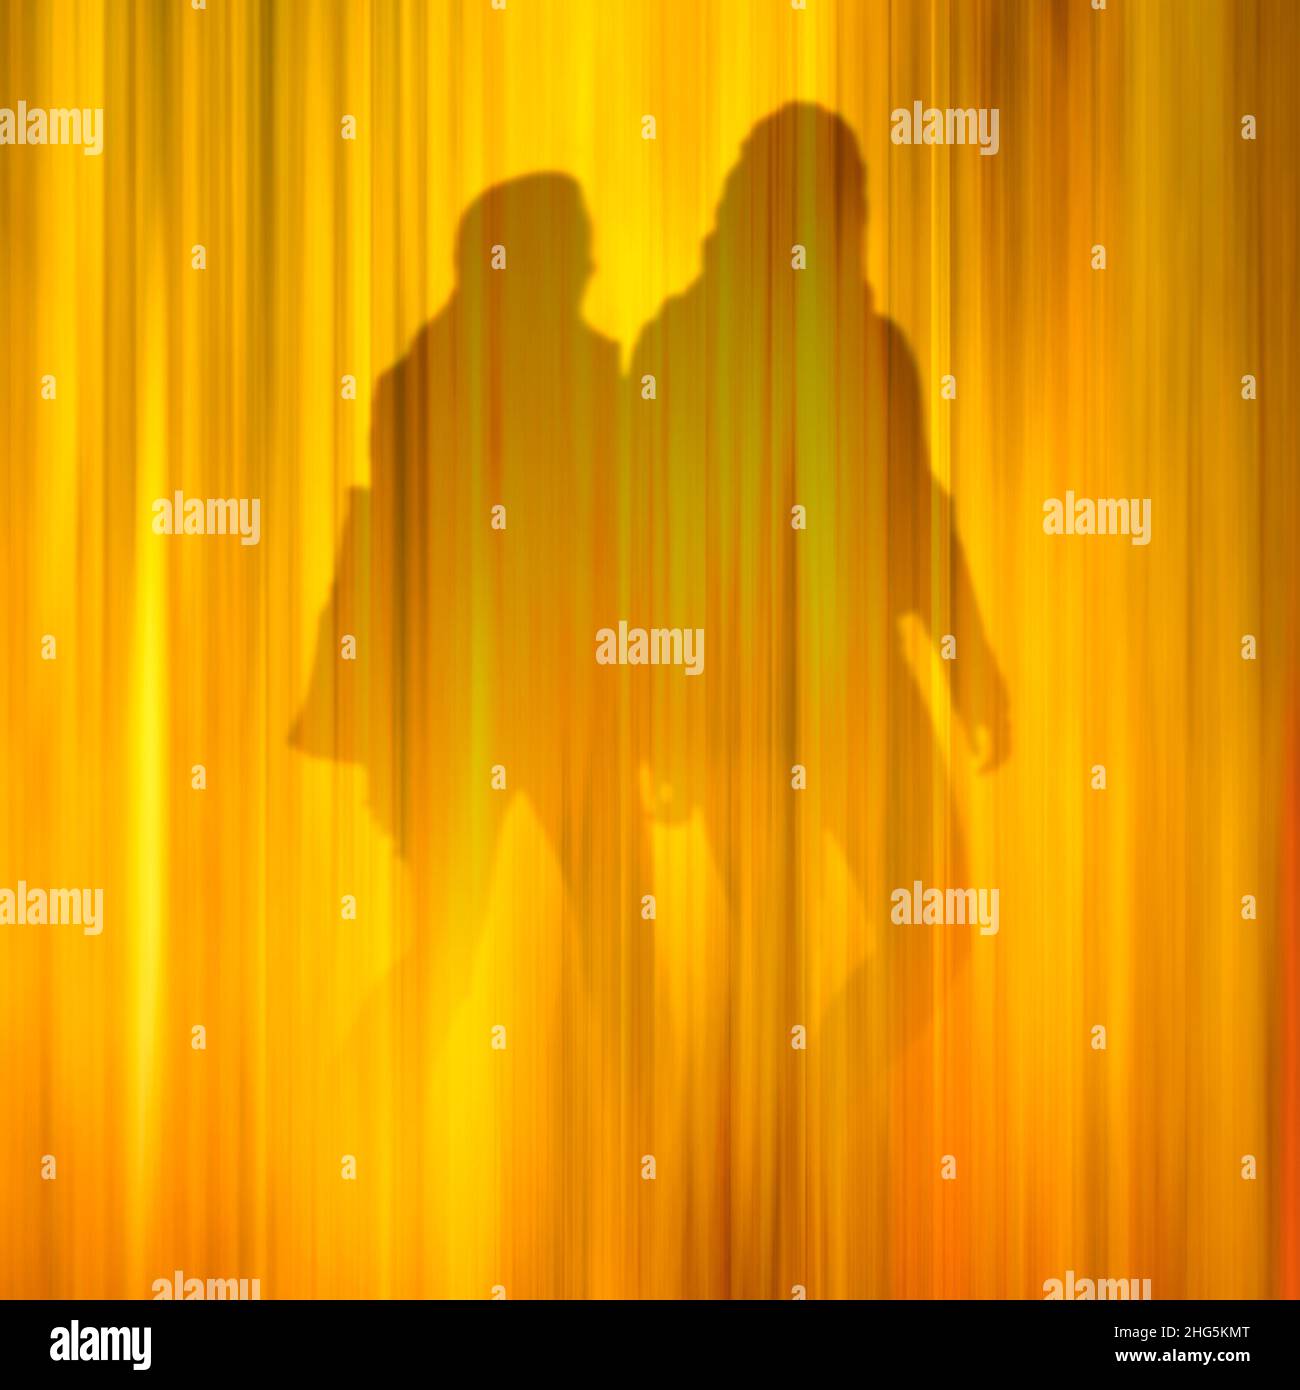 Imagen conceptual de dos personas caminando. Su identidad, género y relación son ambiguas. Foto de stock